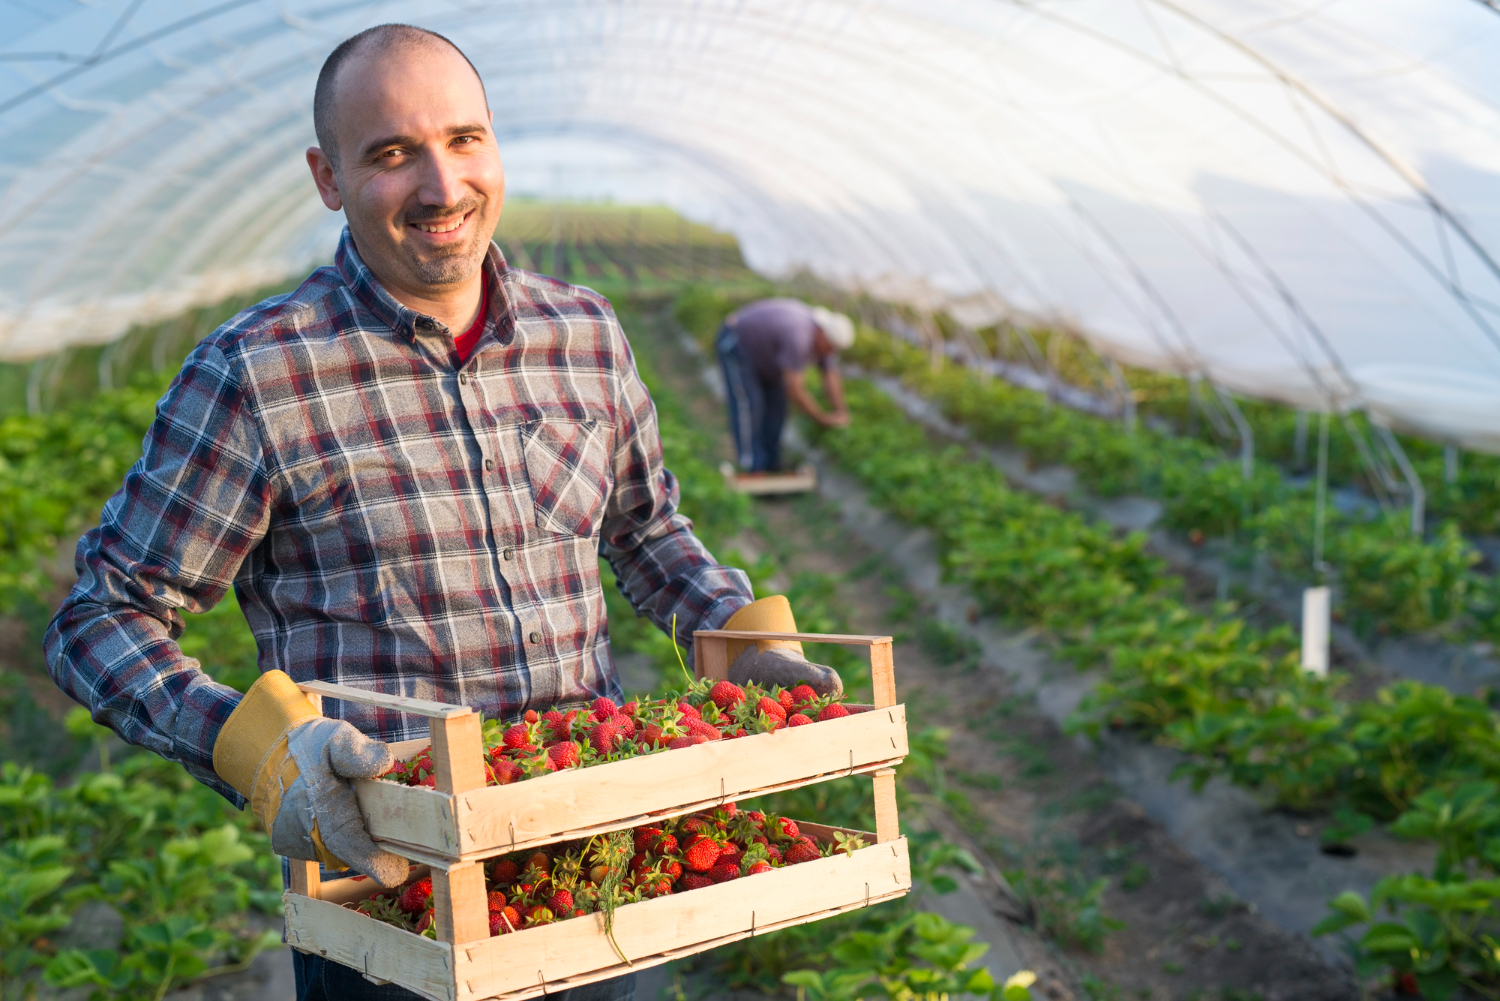 Lire la suite à propos de l’article Combien gagne un agriculteur : revenus et réalités du métier